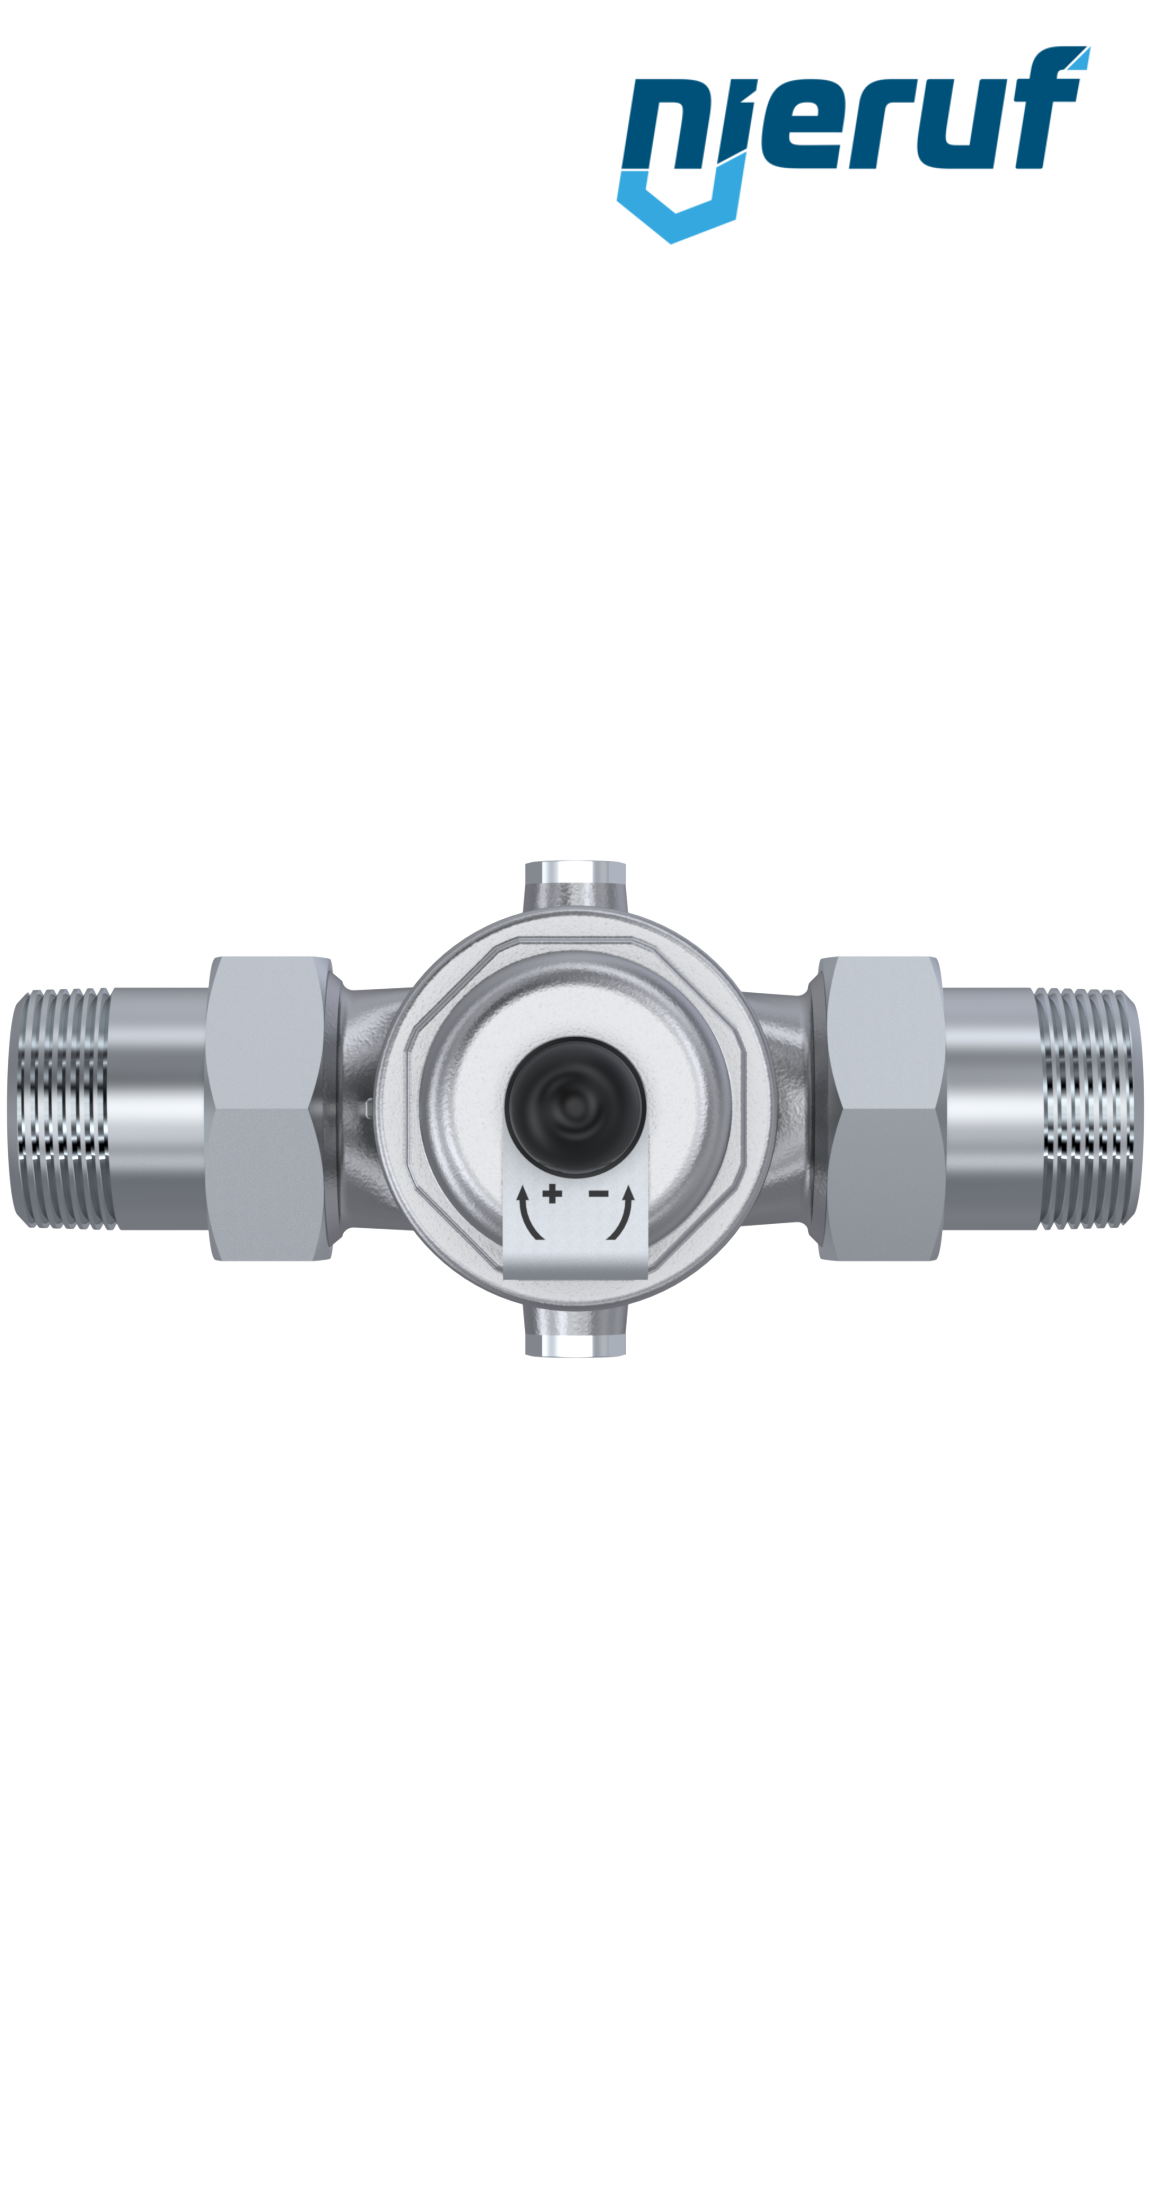 pressure reducing valve 3/4" inch male thread DM04 stainless steel FKM 1.0 - 8.0 bar